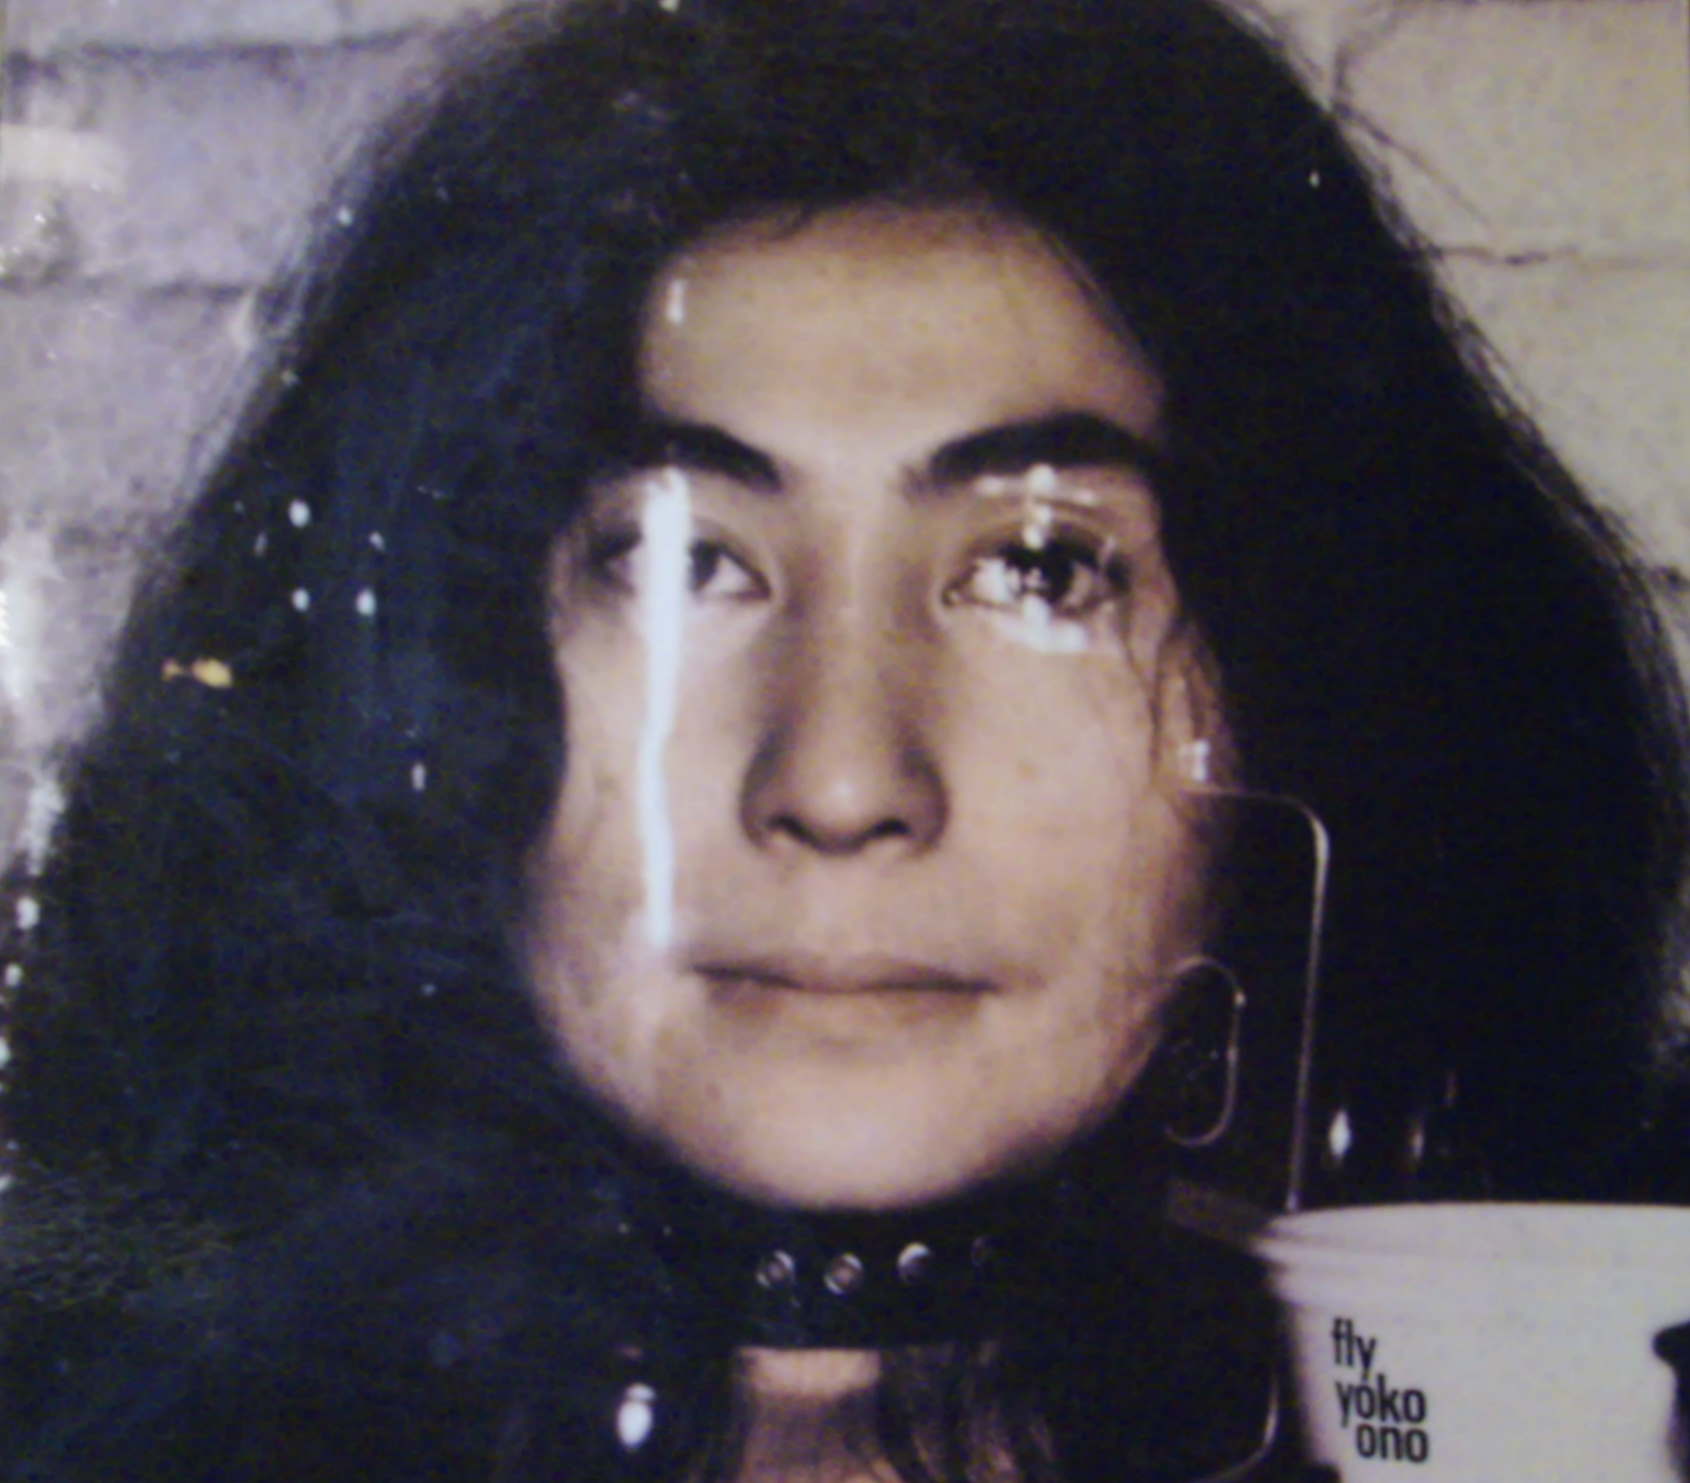 Yoko Ono / Fly